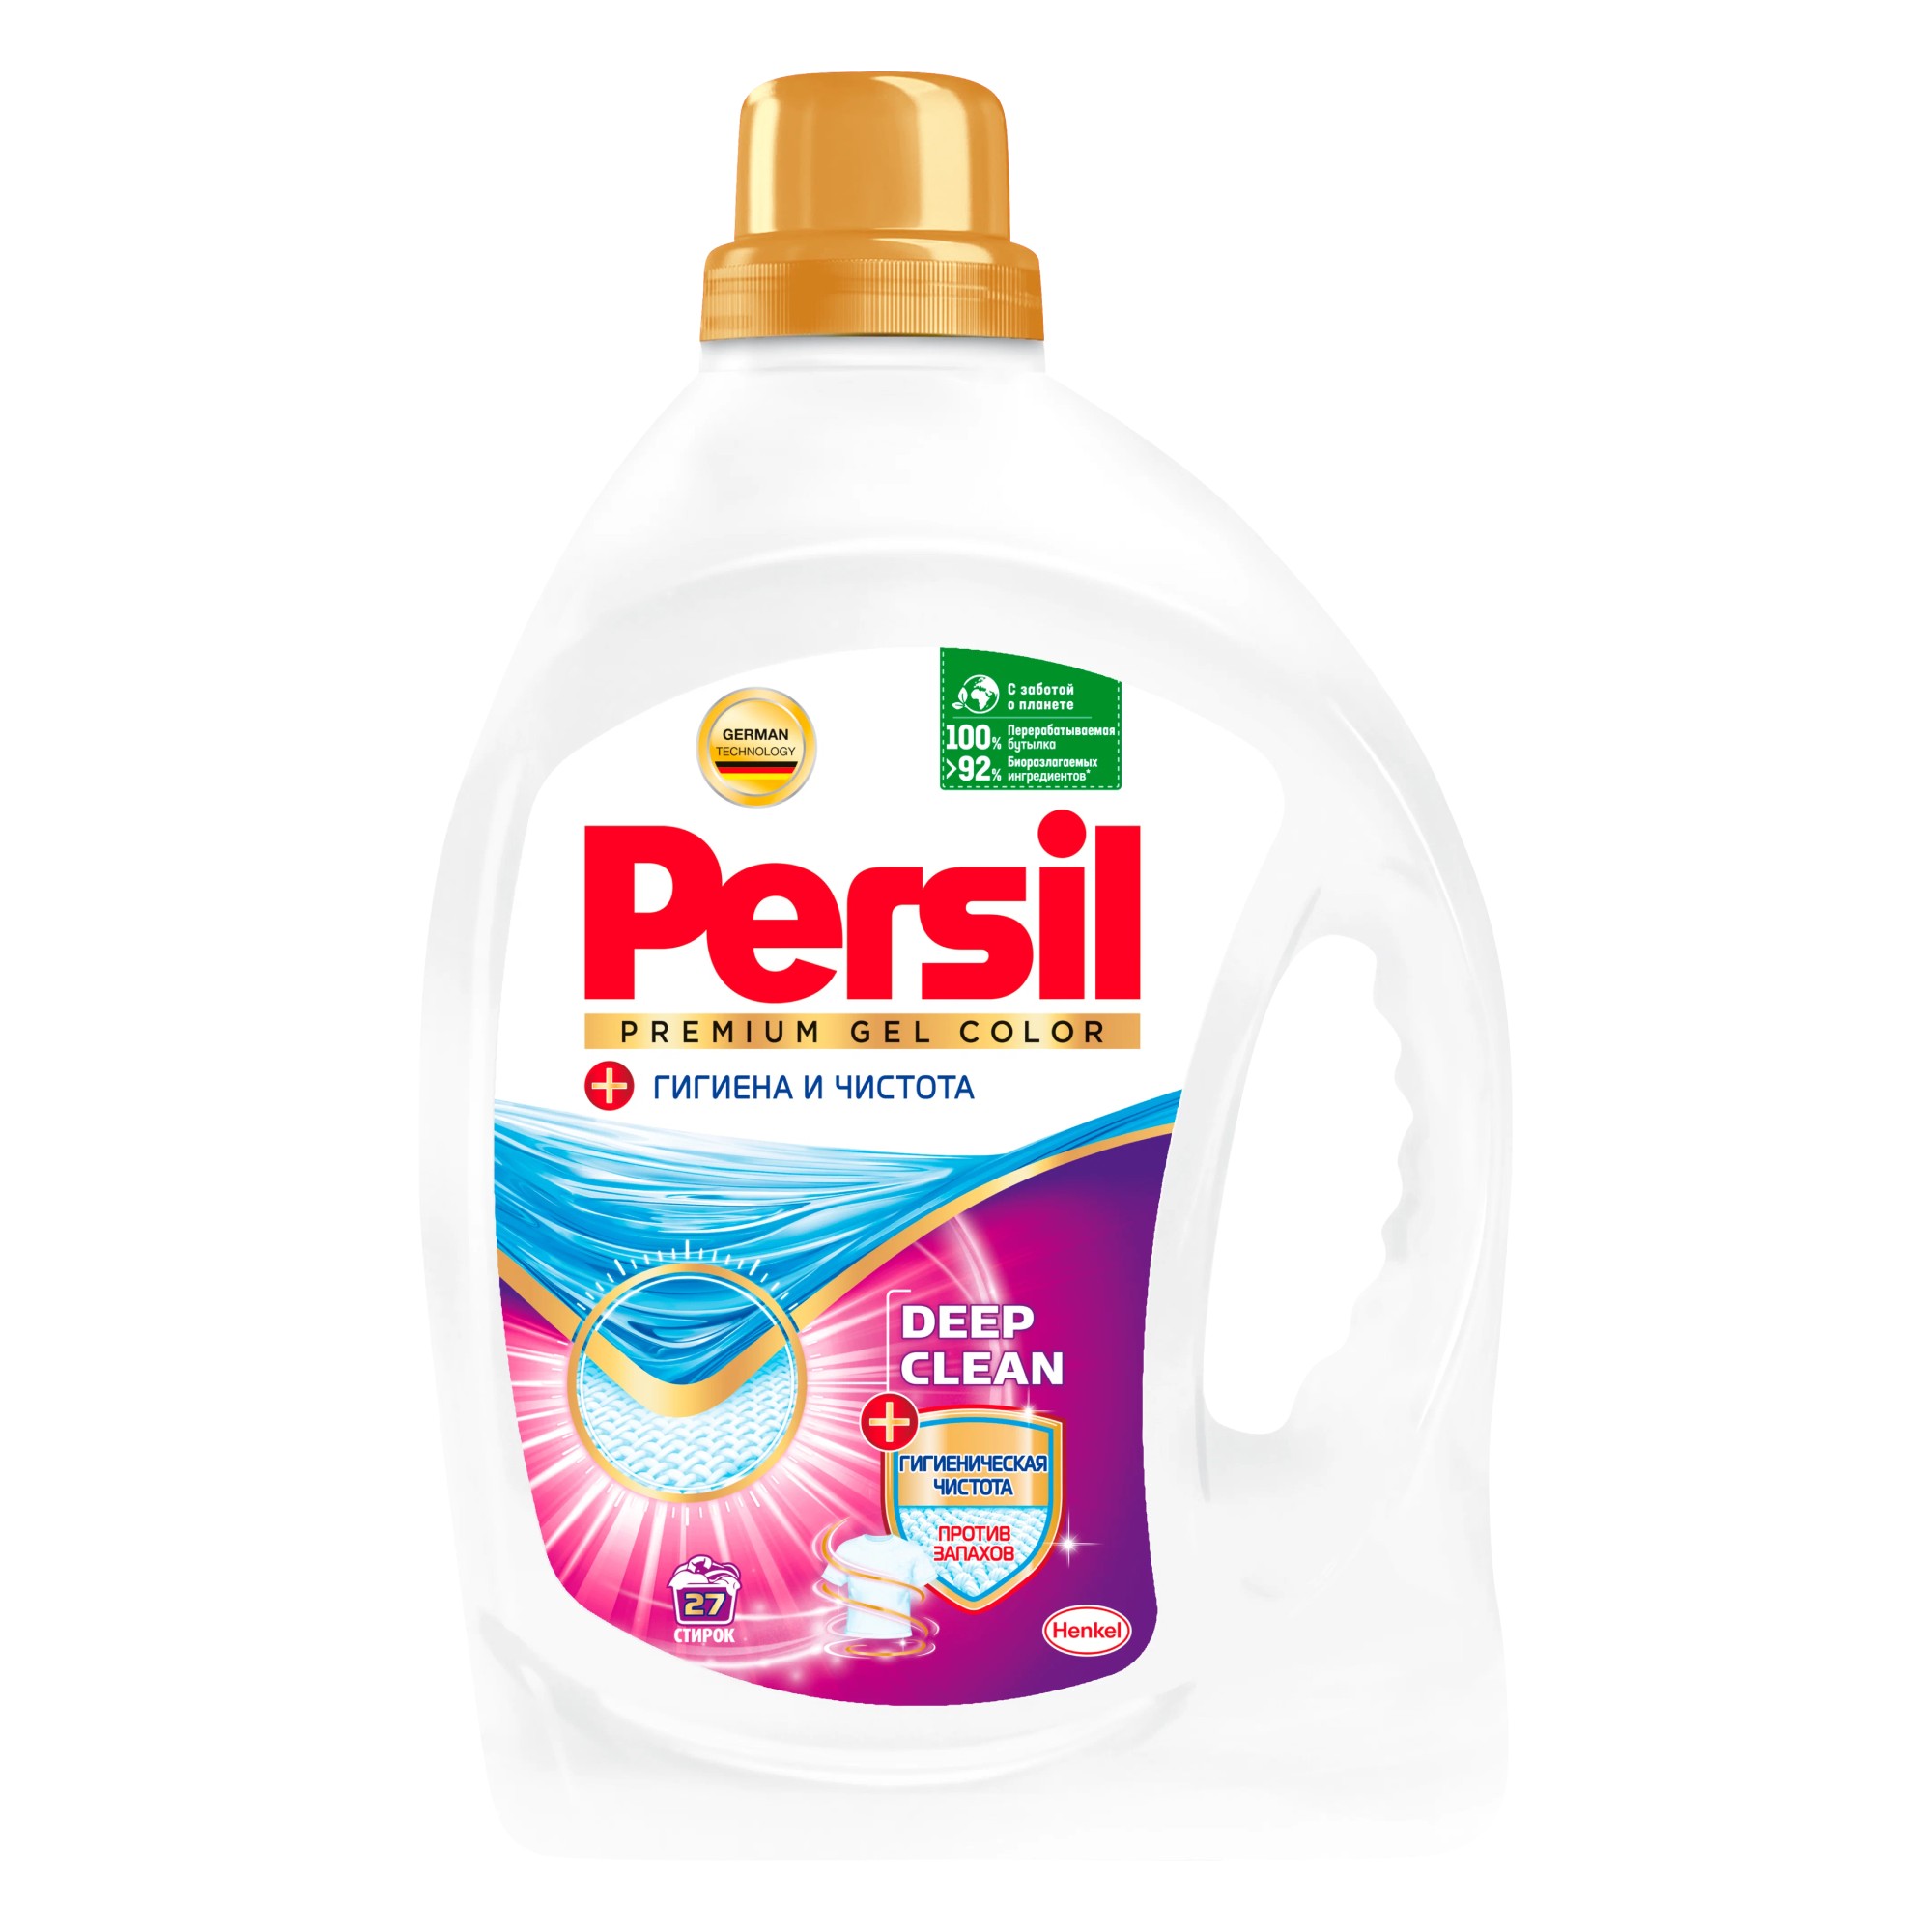 Гель для стирки Persil Premium Gel Color 1,17 л гель концентрат для стирки persil power лаванда 1 95 литра